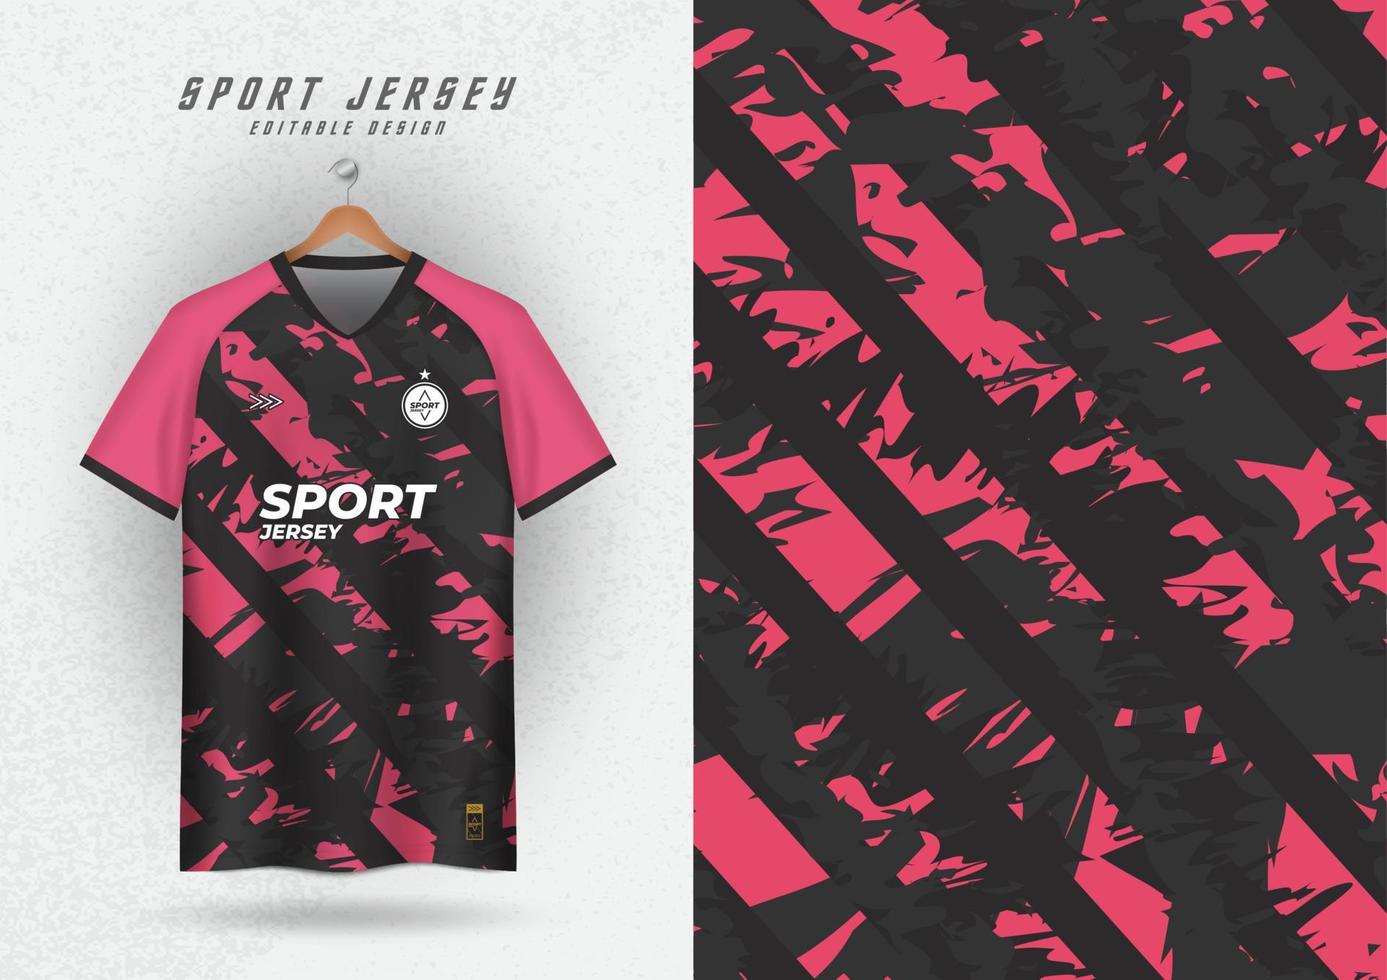 achtergrond voor sport- Jersey voetbal Jersey rennen Jersey racing Jersey patroon roze zwart strepen vector